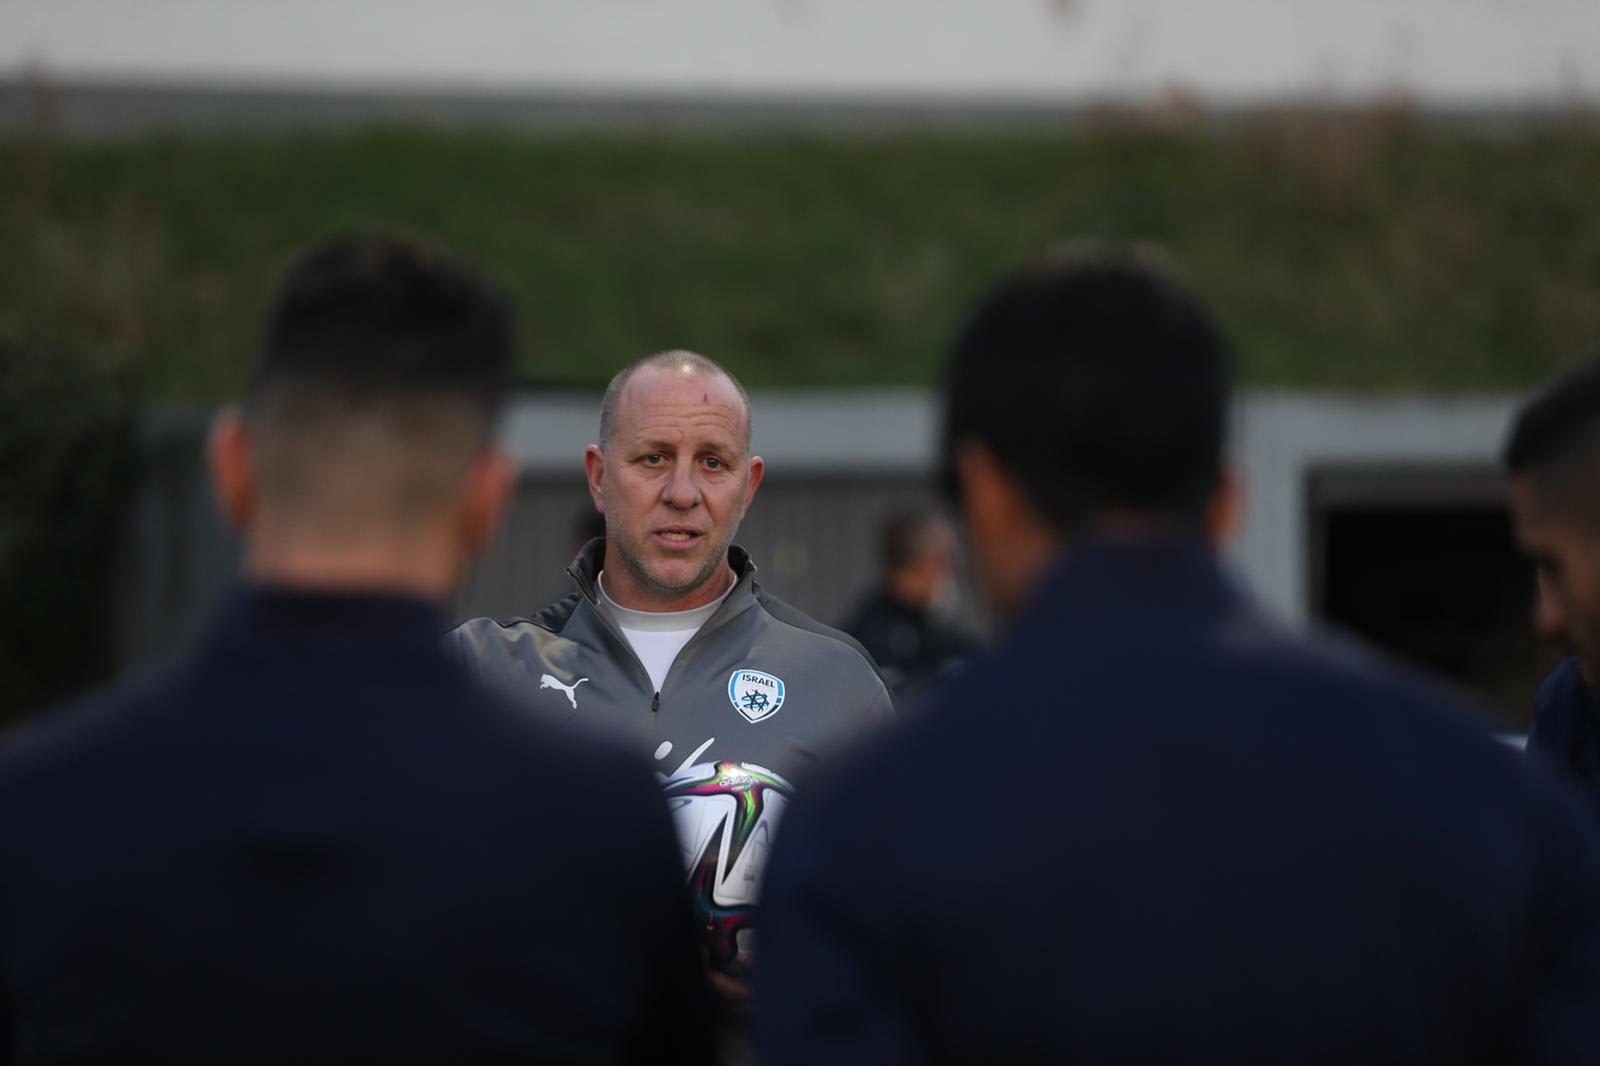 גדי ברומר המאמן הזמני של נבחרת ישראל בכדורגל